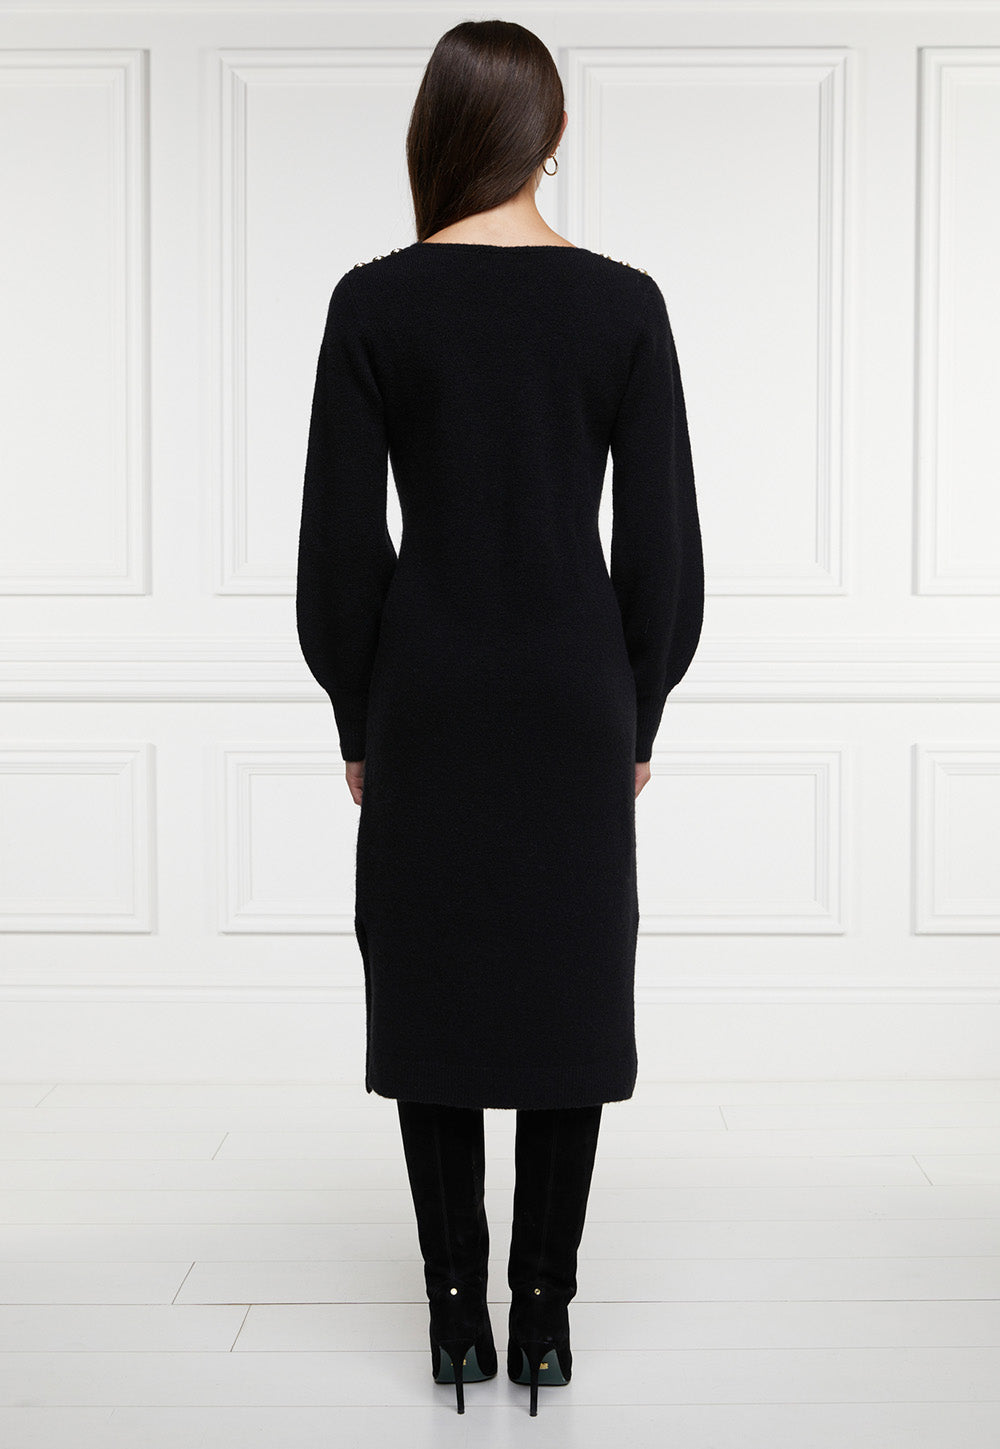 Berkeley V-Neck Dress - Black sold by Angel Divine